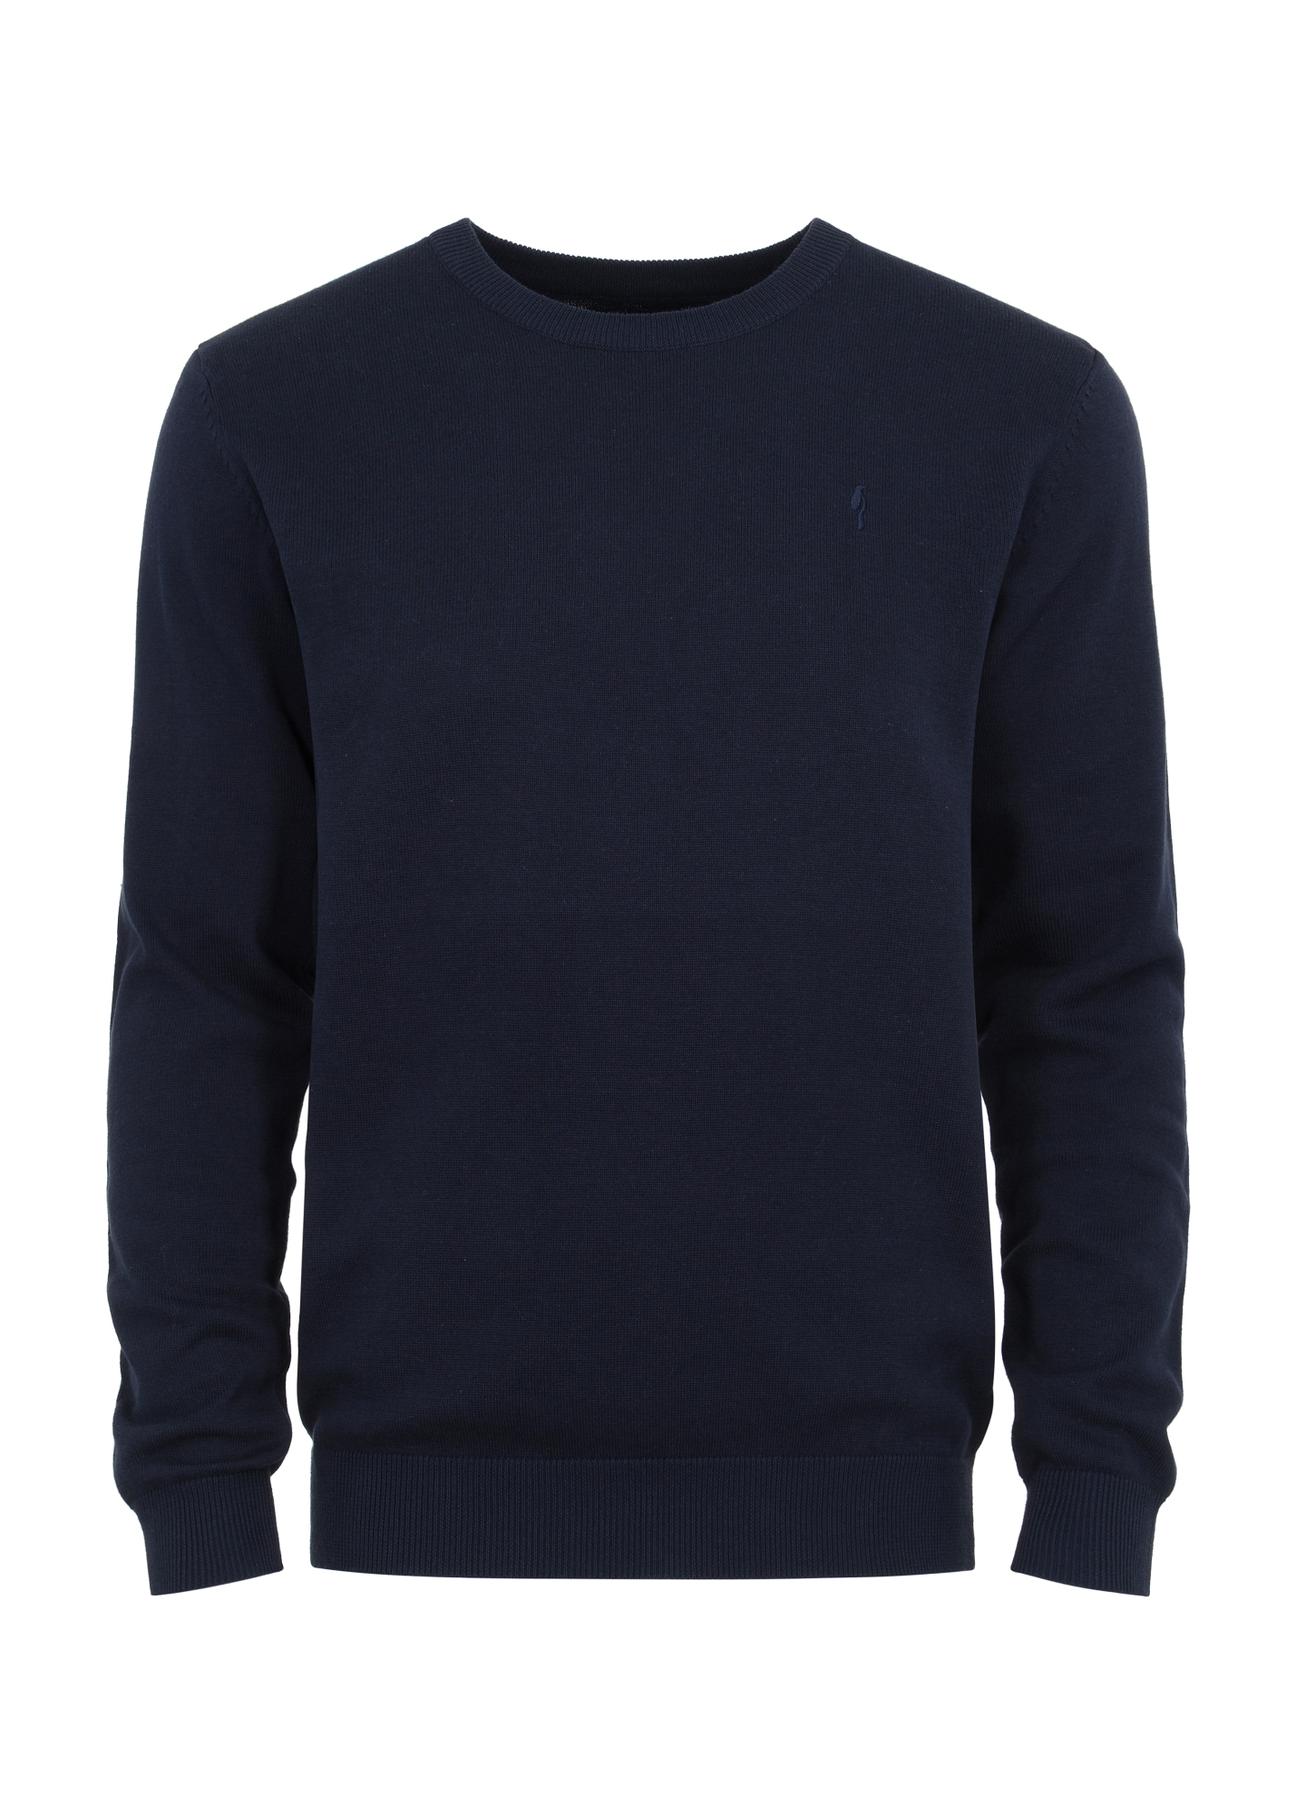 Granatowy sweter męski basic SWEMT-0114-69(Z23)